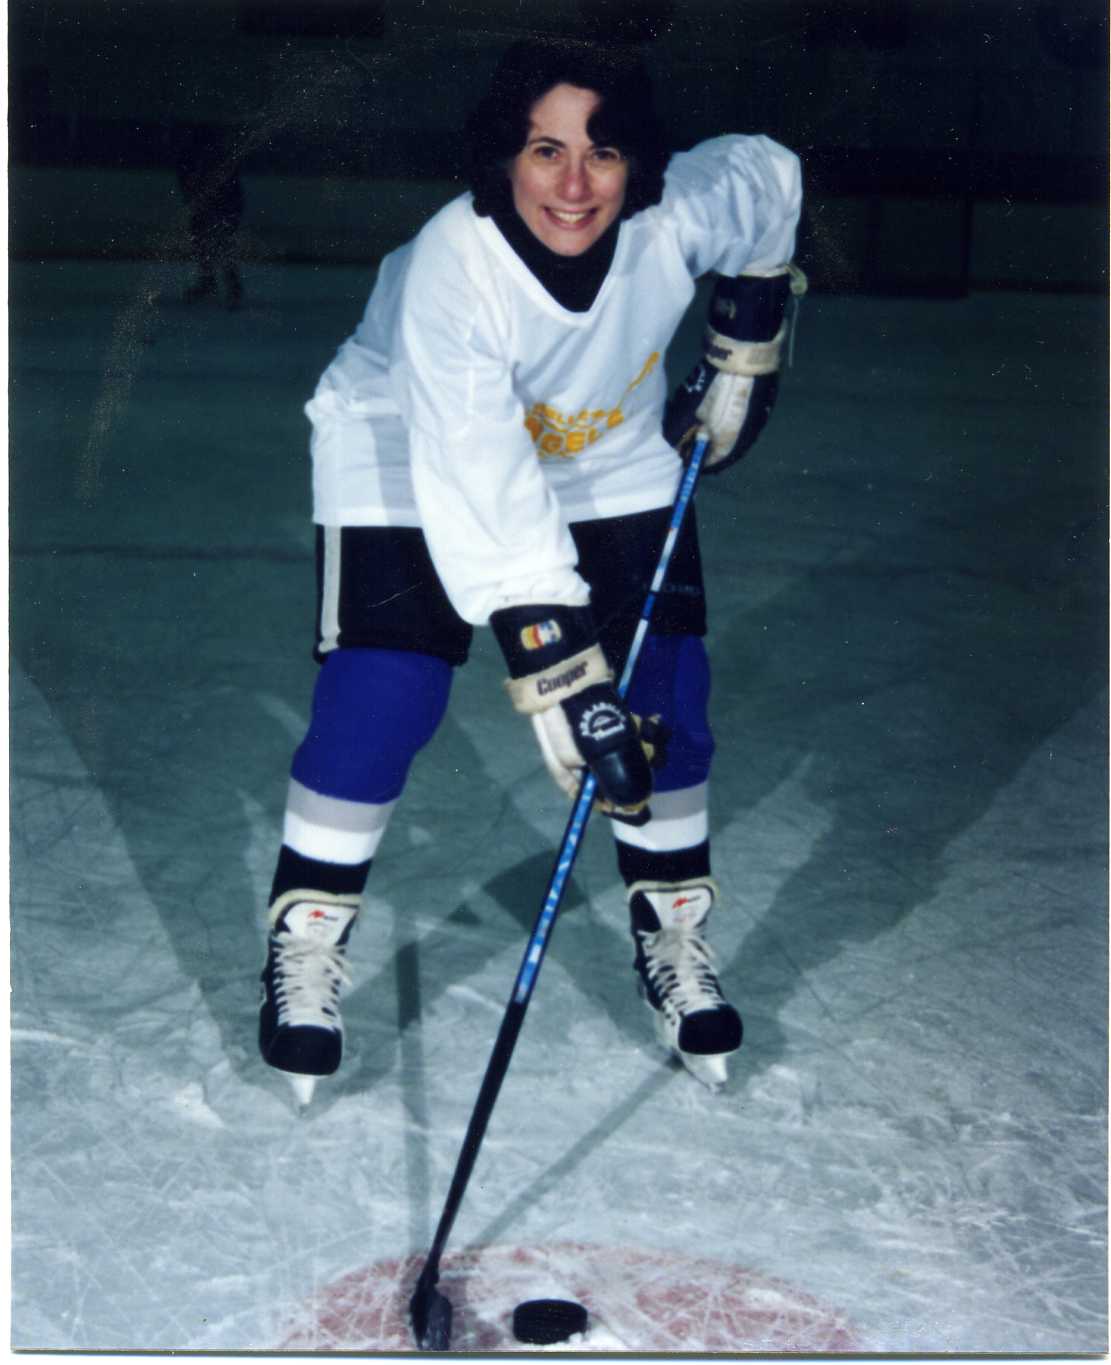 Miriam Garfinkle hockey player.